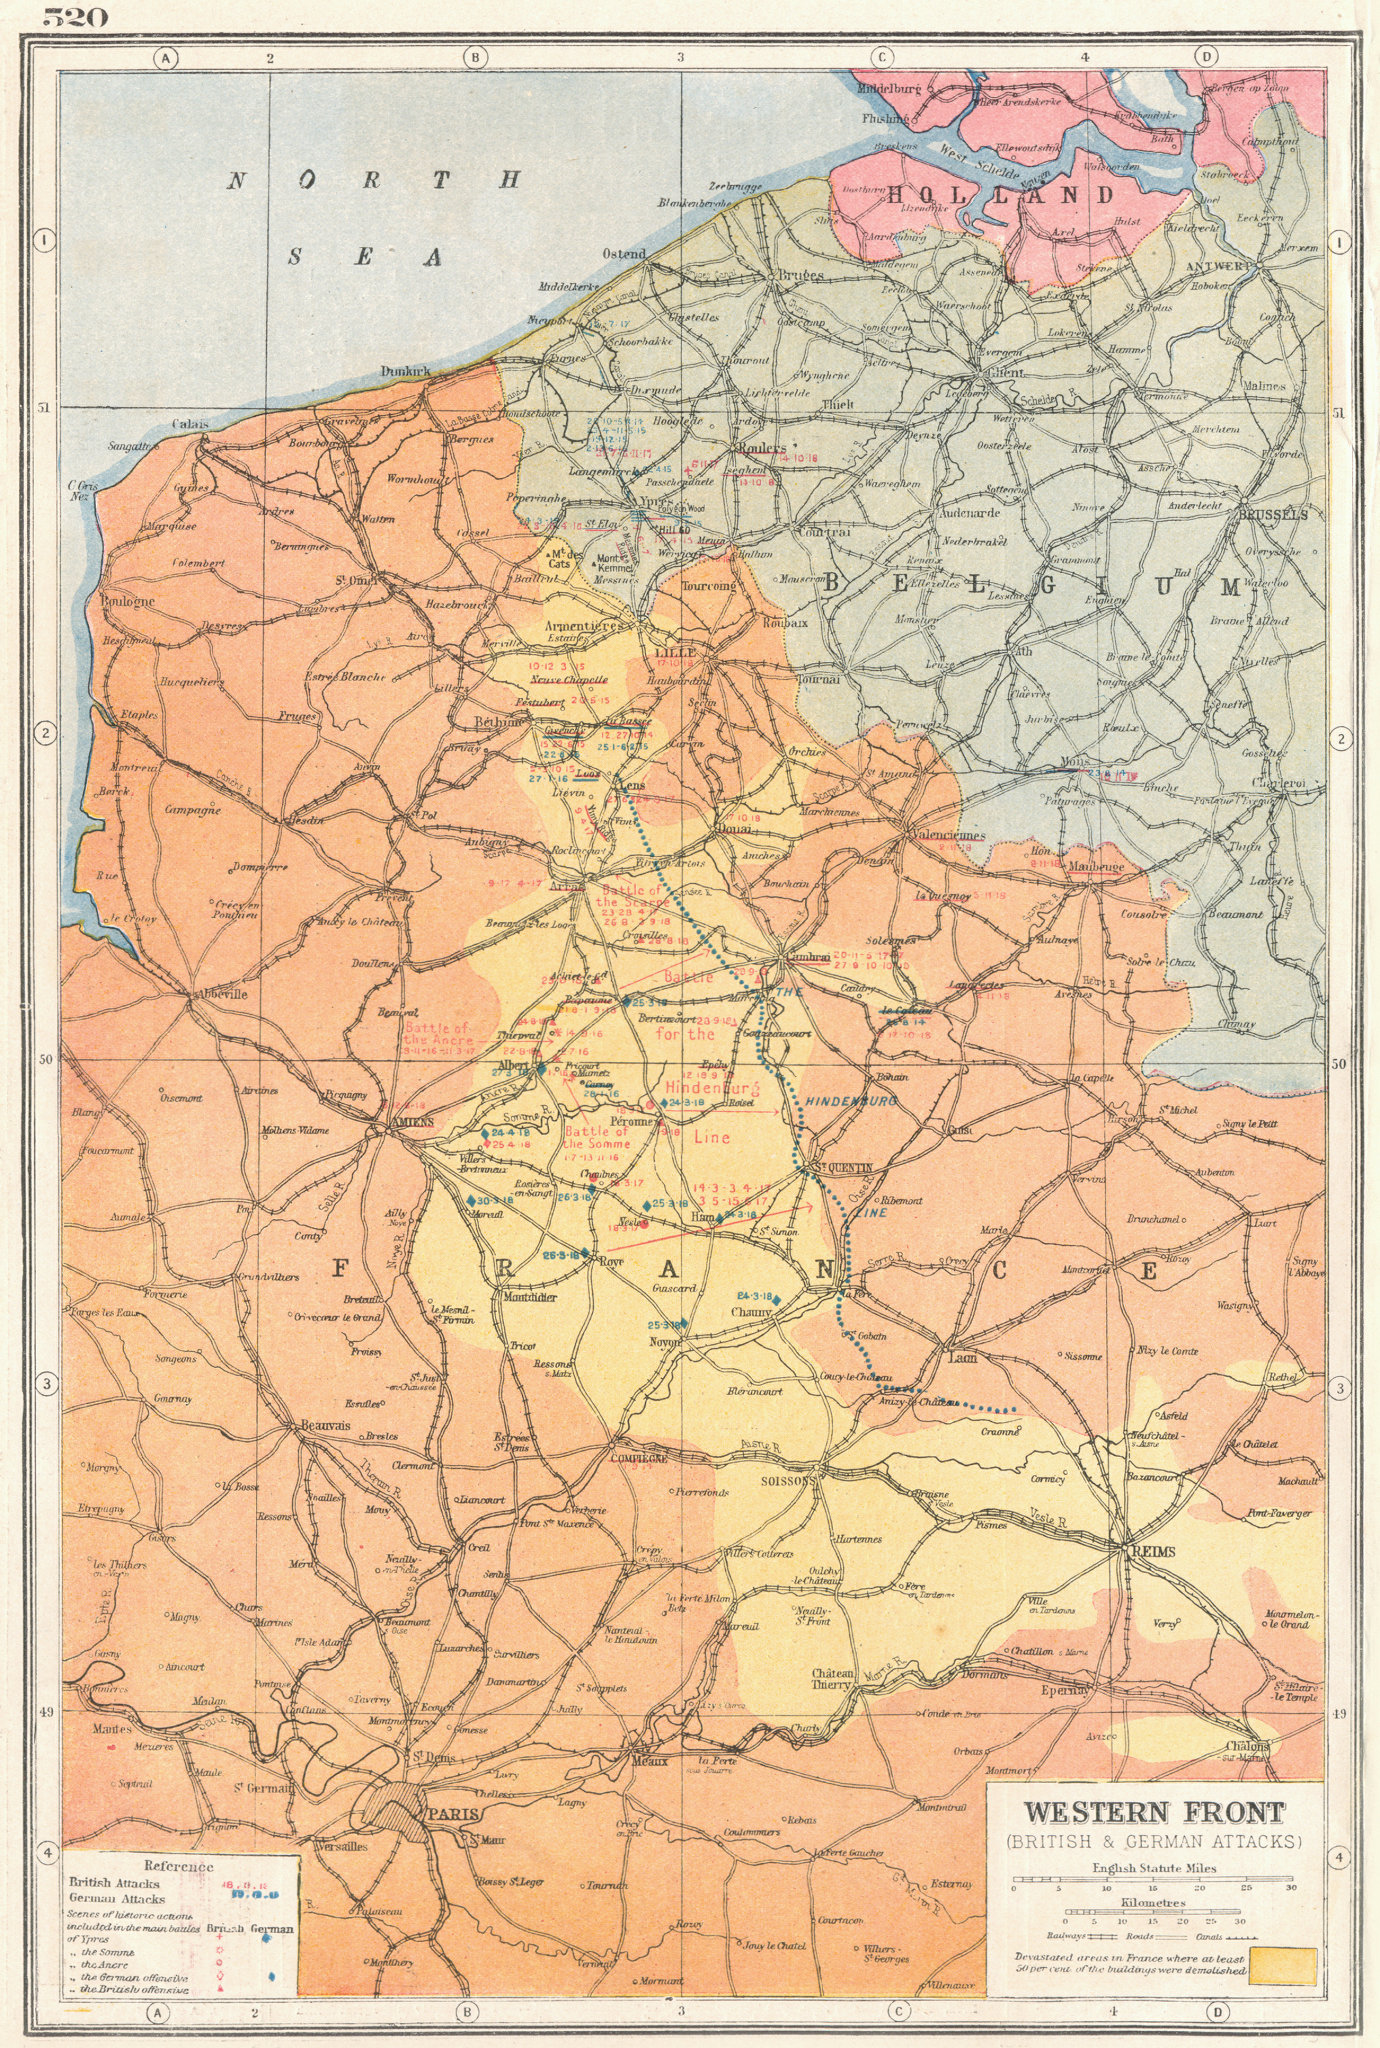 FRANCE BELGIUM. Western Front First World War 1. Key battles 1914-18 1920 map